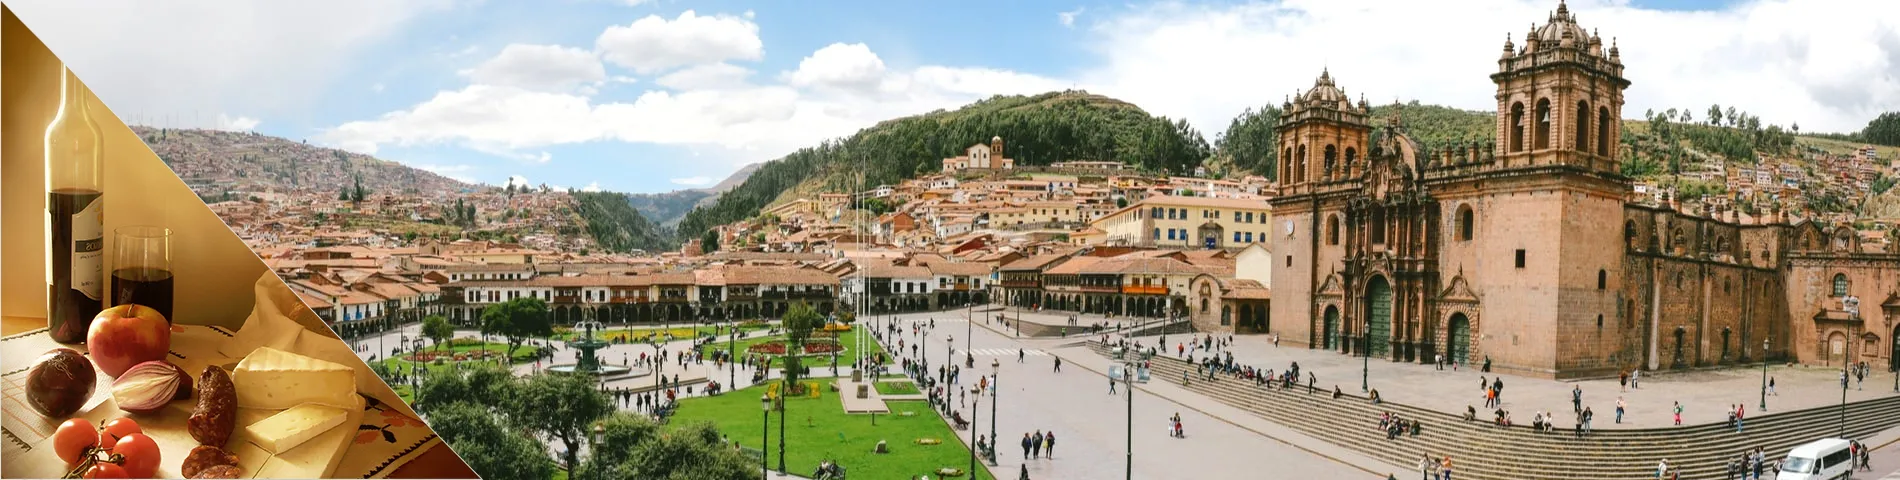 Cuzco - Spanish & Culture